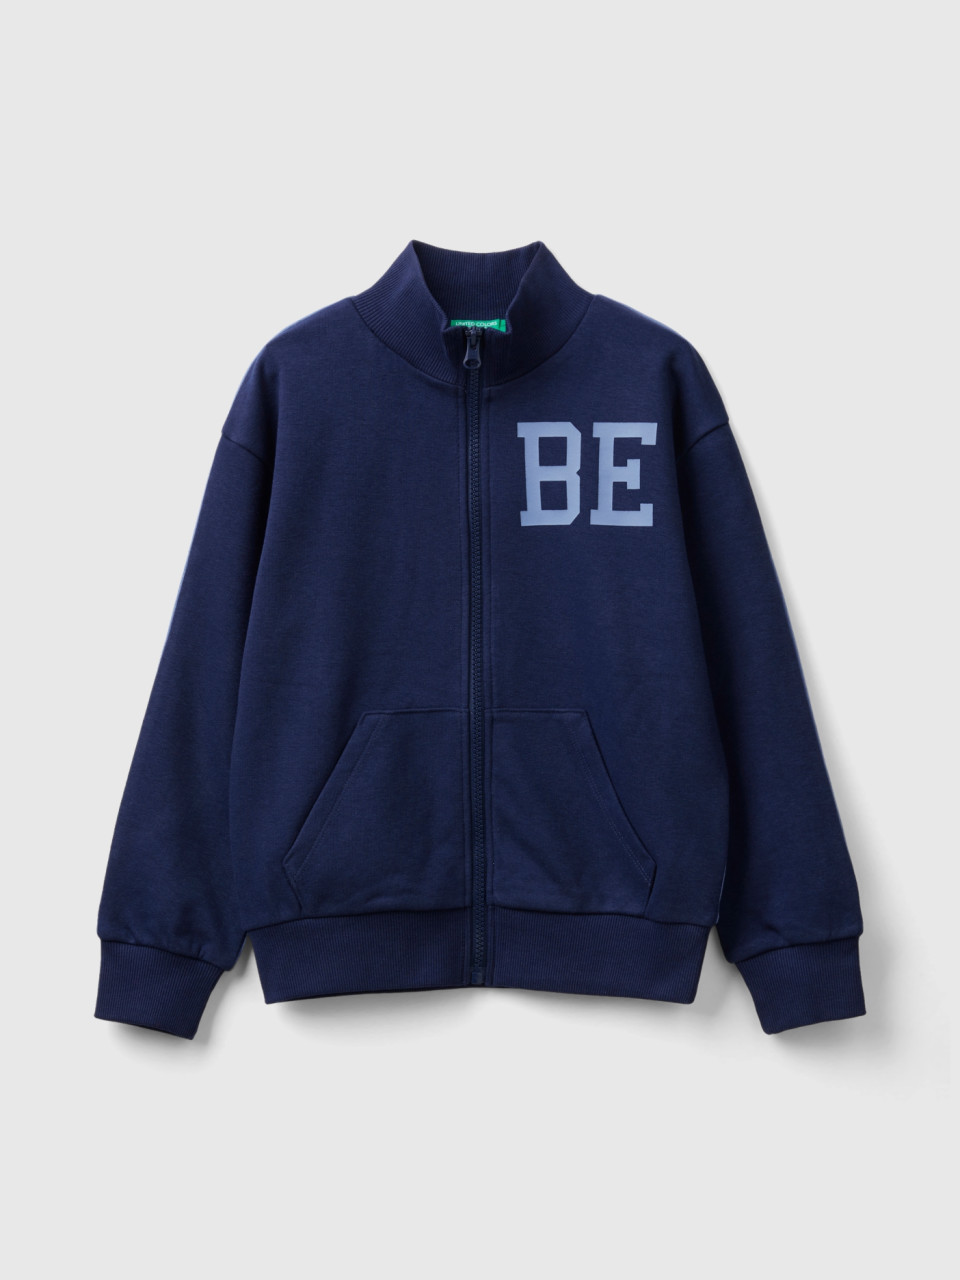 Benetton, Zip-up Sweatshirt With Print, Multi-color, Kids